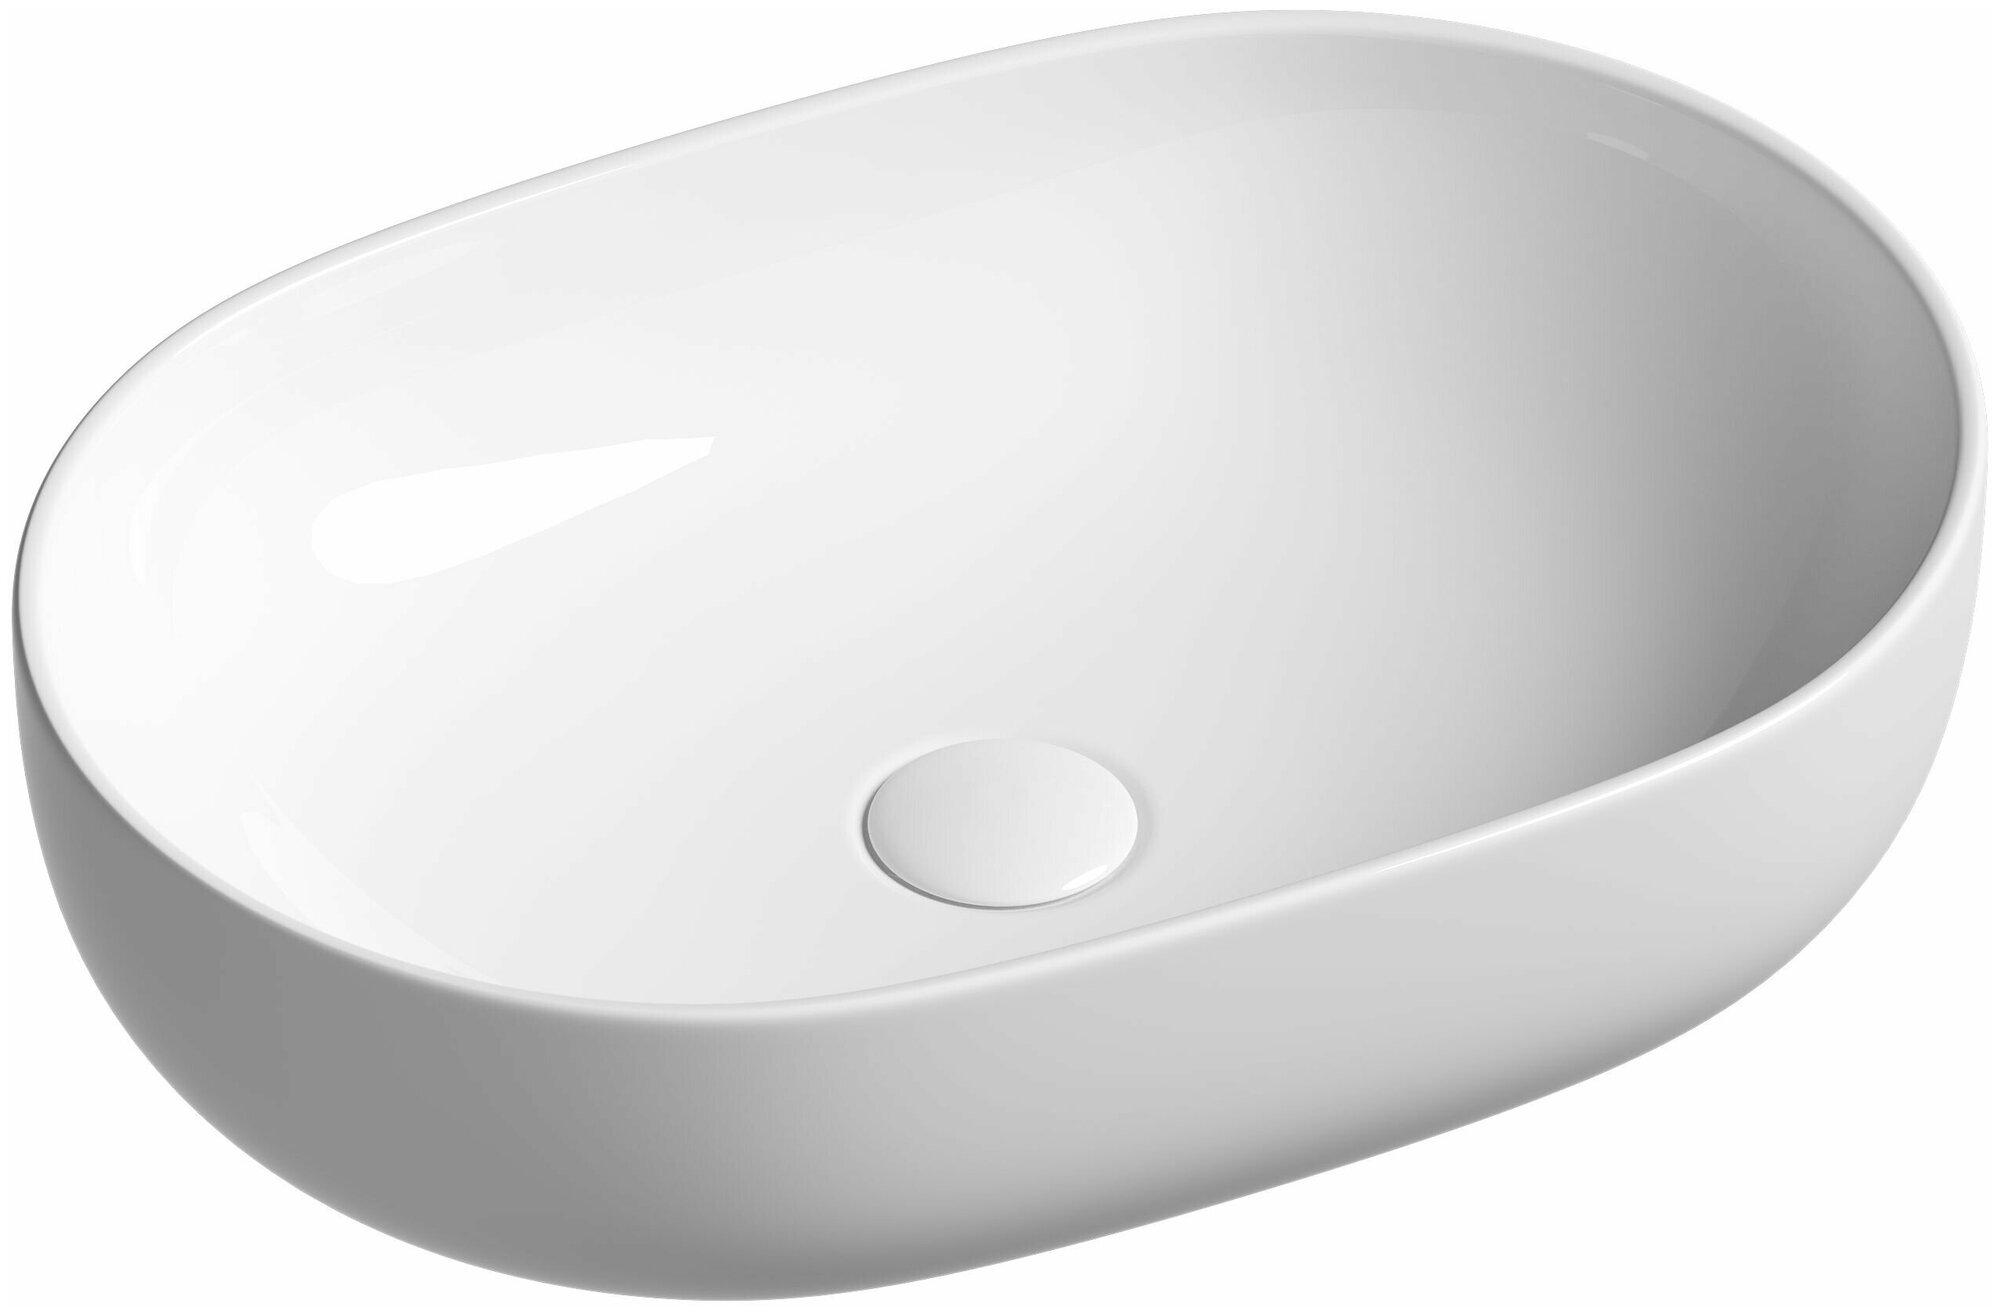 Накладная раковина для ванной Ceramica Nova Element CN6047 Овал 60 см.